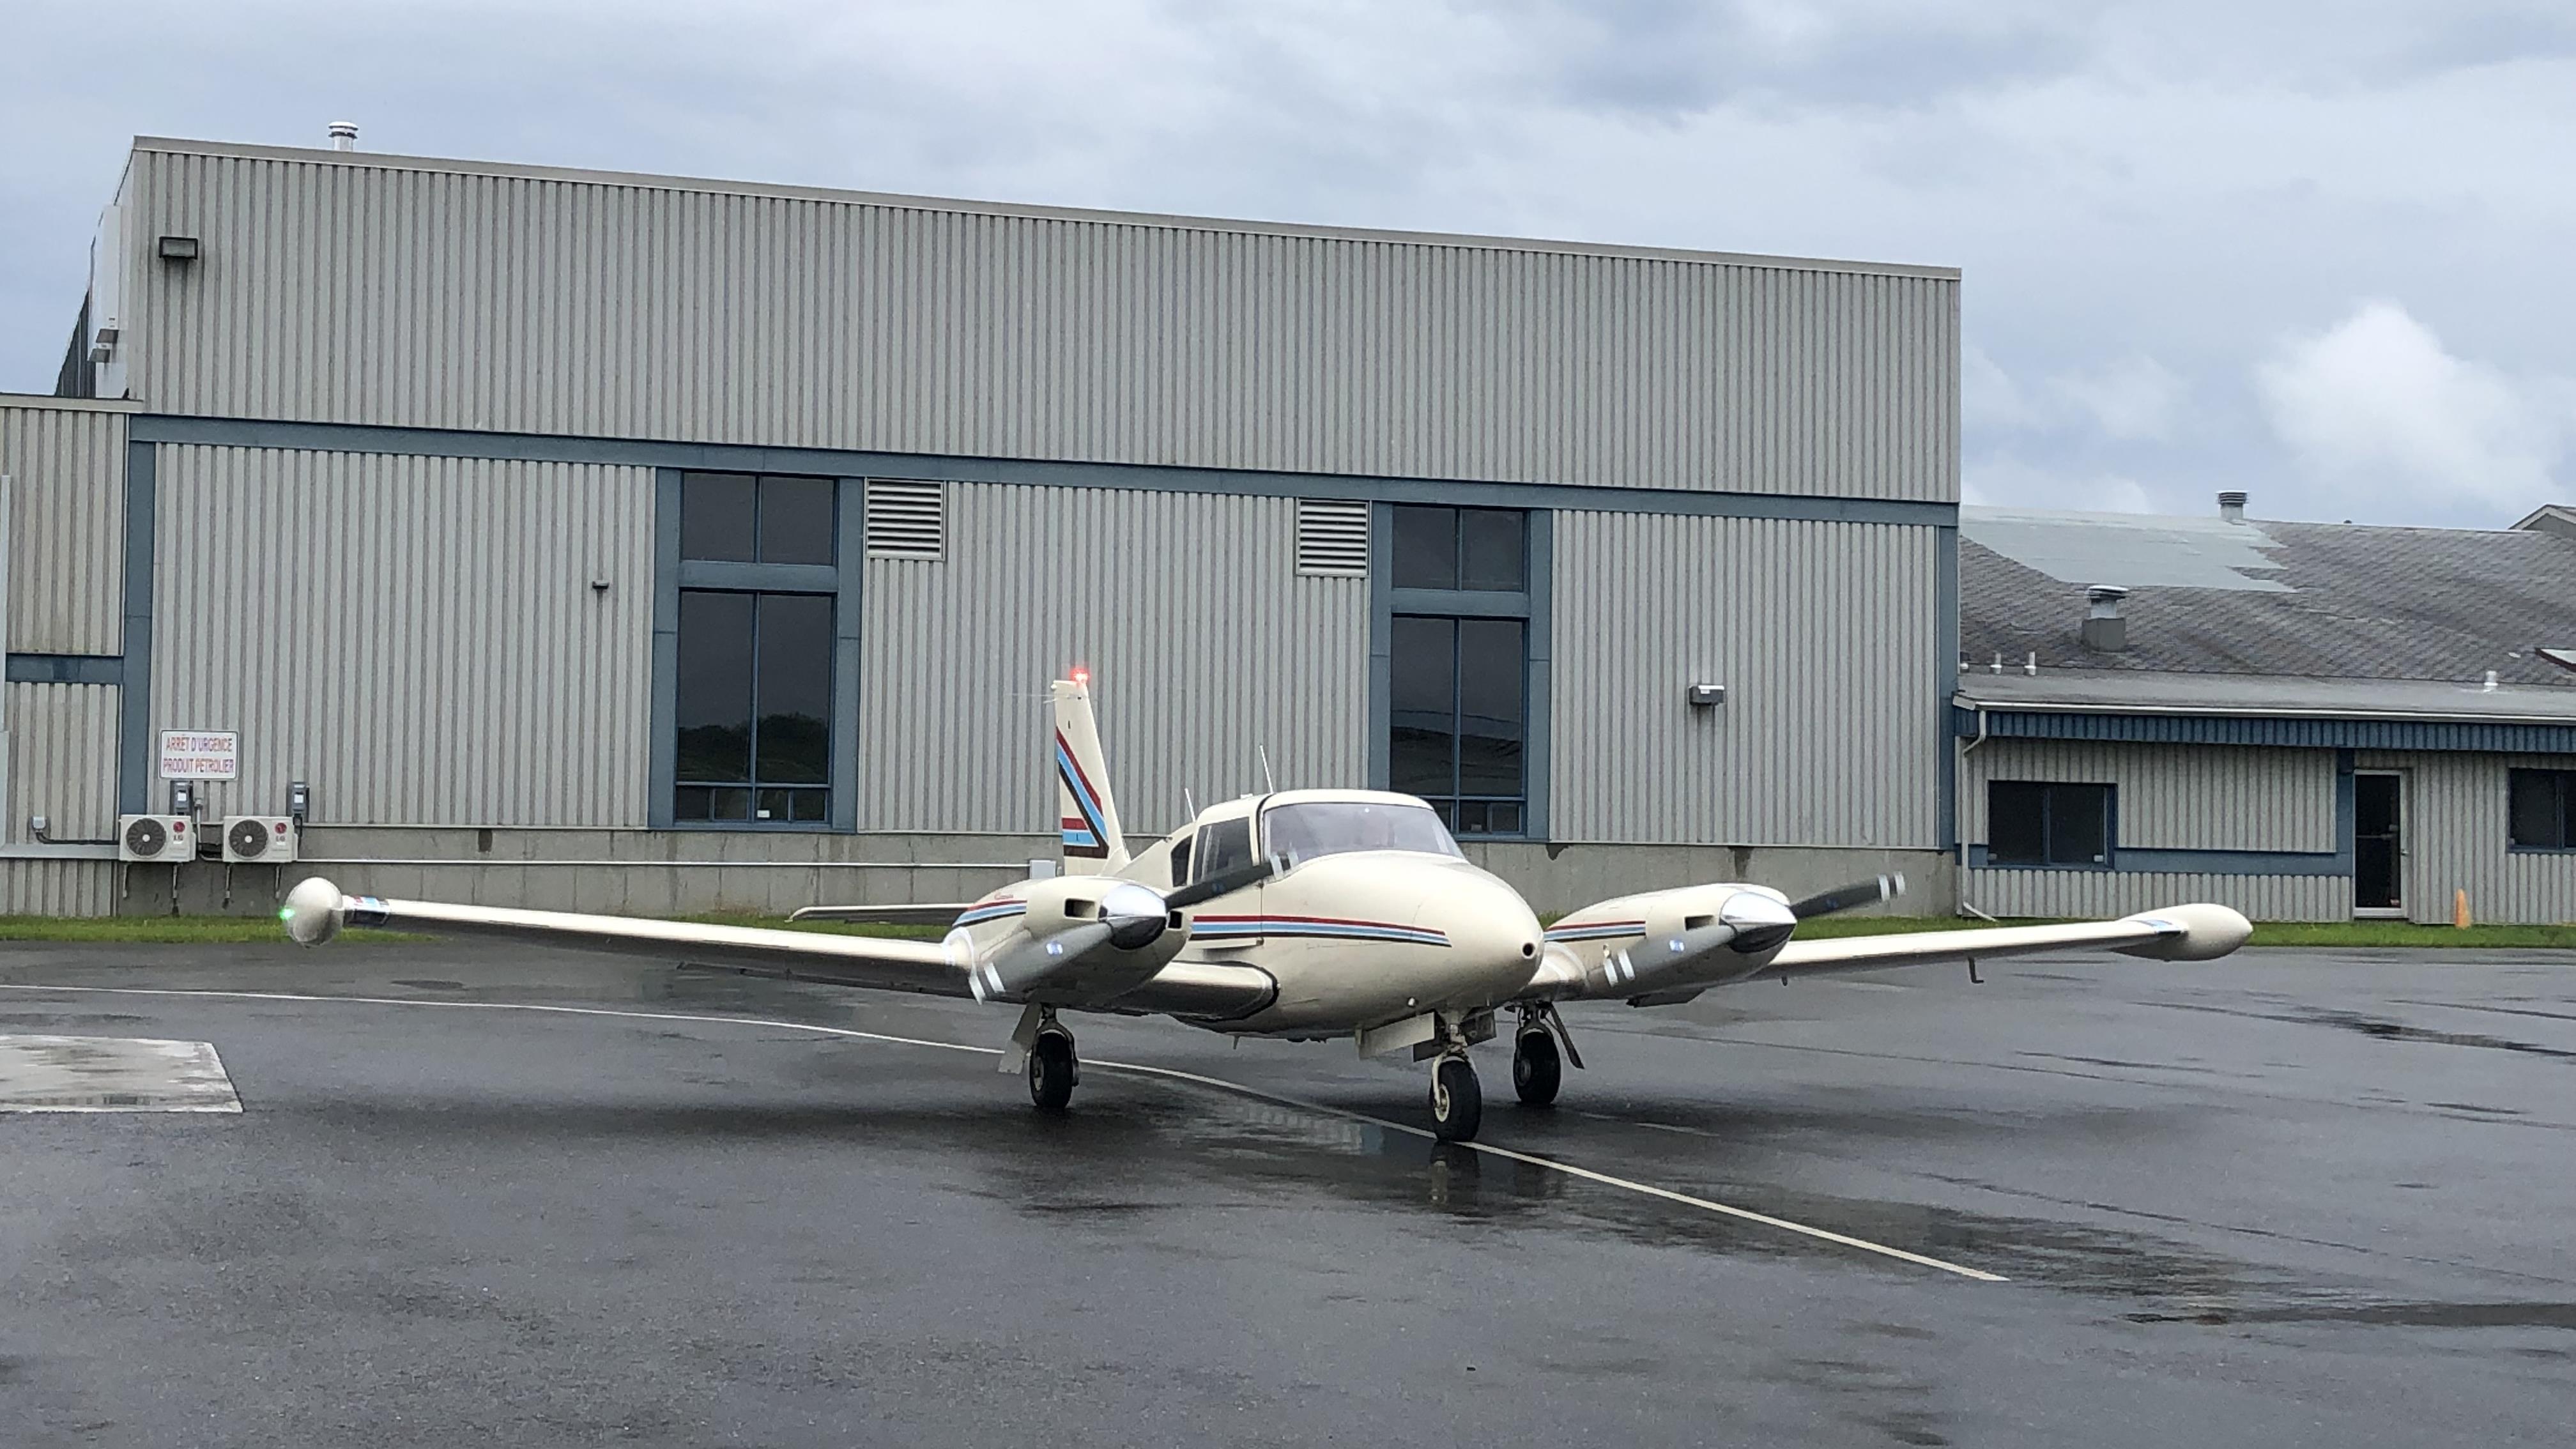 Grande ouverture d’une nouvelle école d’aviation à Sherbrooke
Grande ouverture d’une nouvelle école d’aviation à Sherbrooke